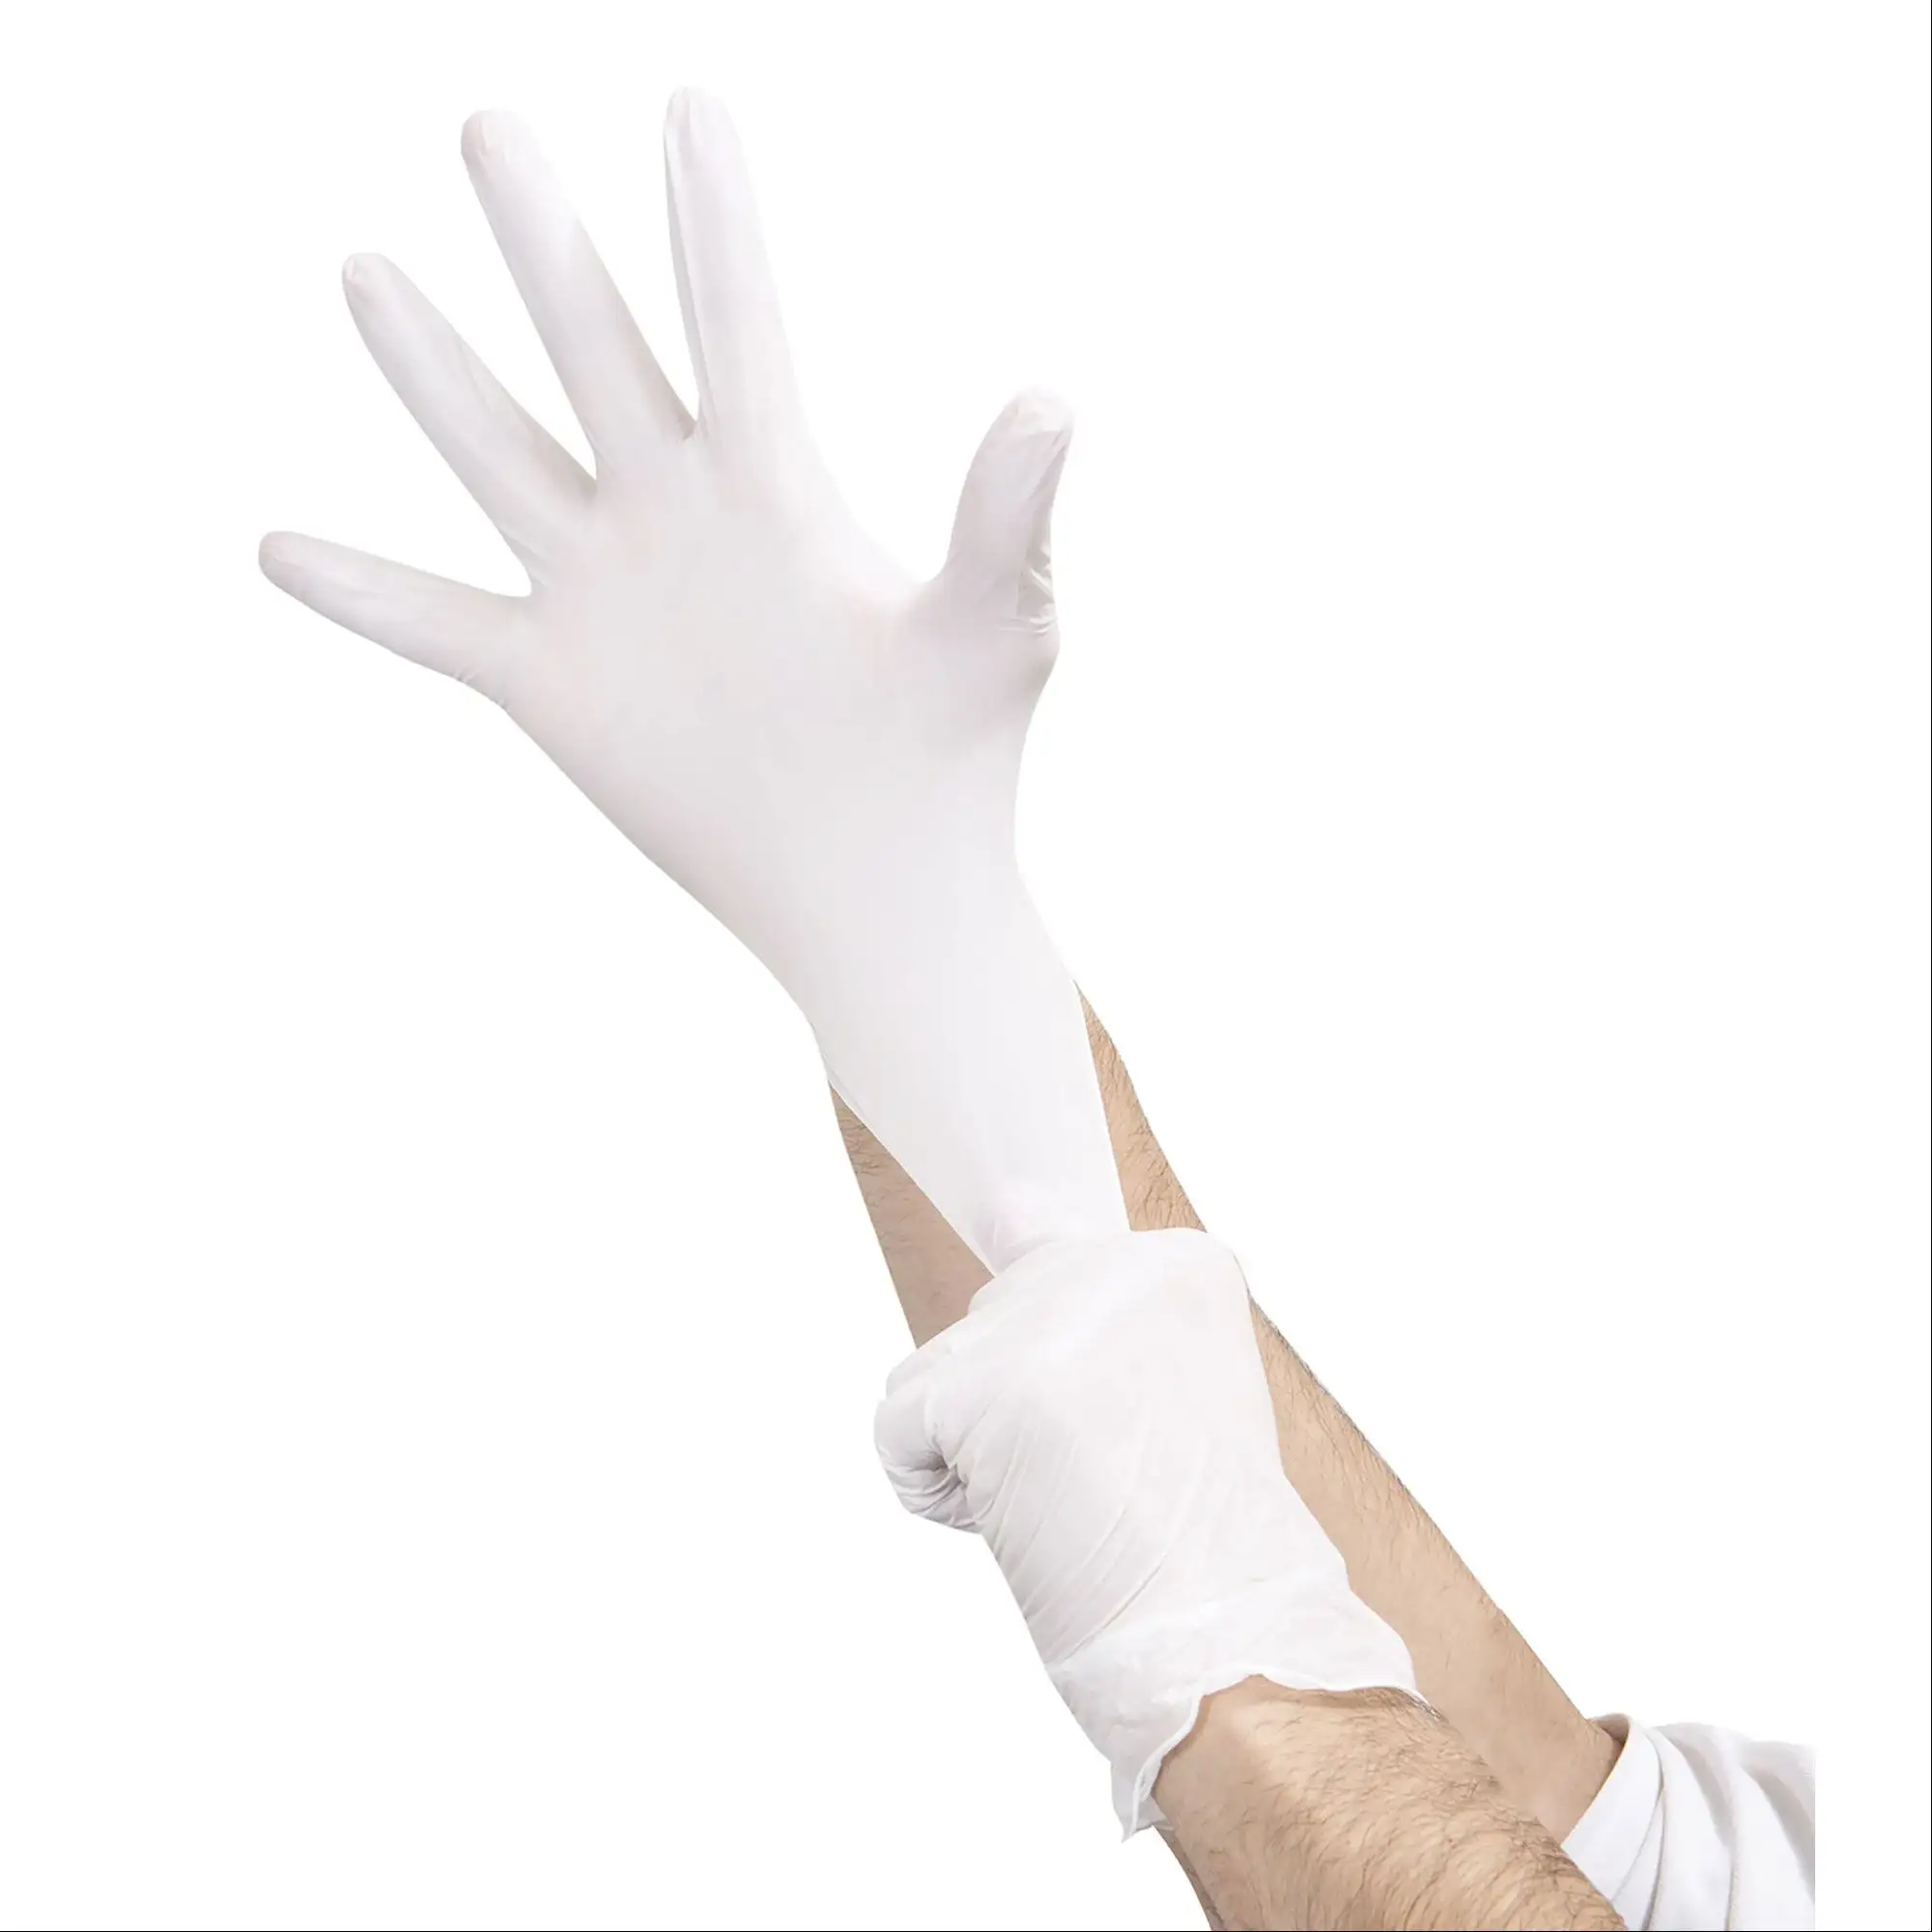 Malaisie prix d'usine gants en latex jetables bonne qualité M5.0g blanc laiteux sans poudre gants en latex pour examen